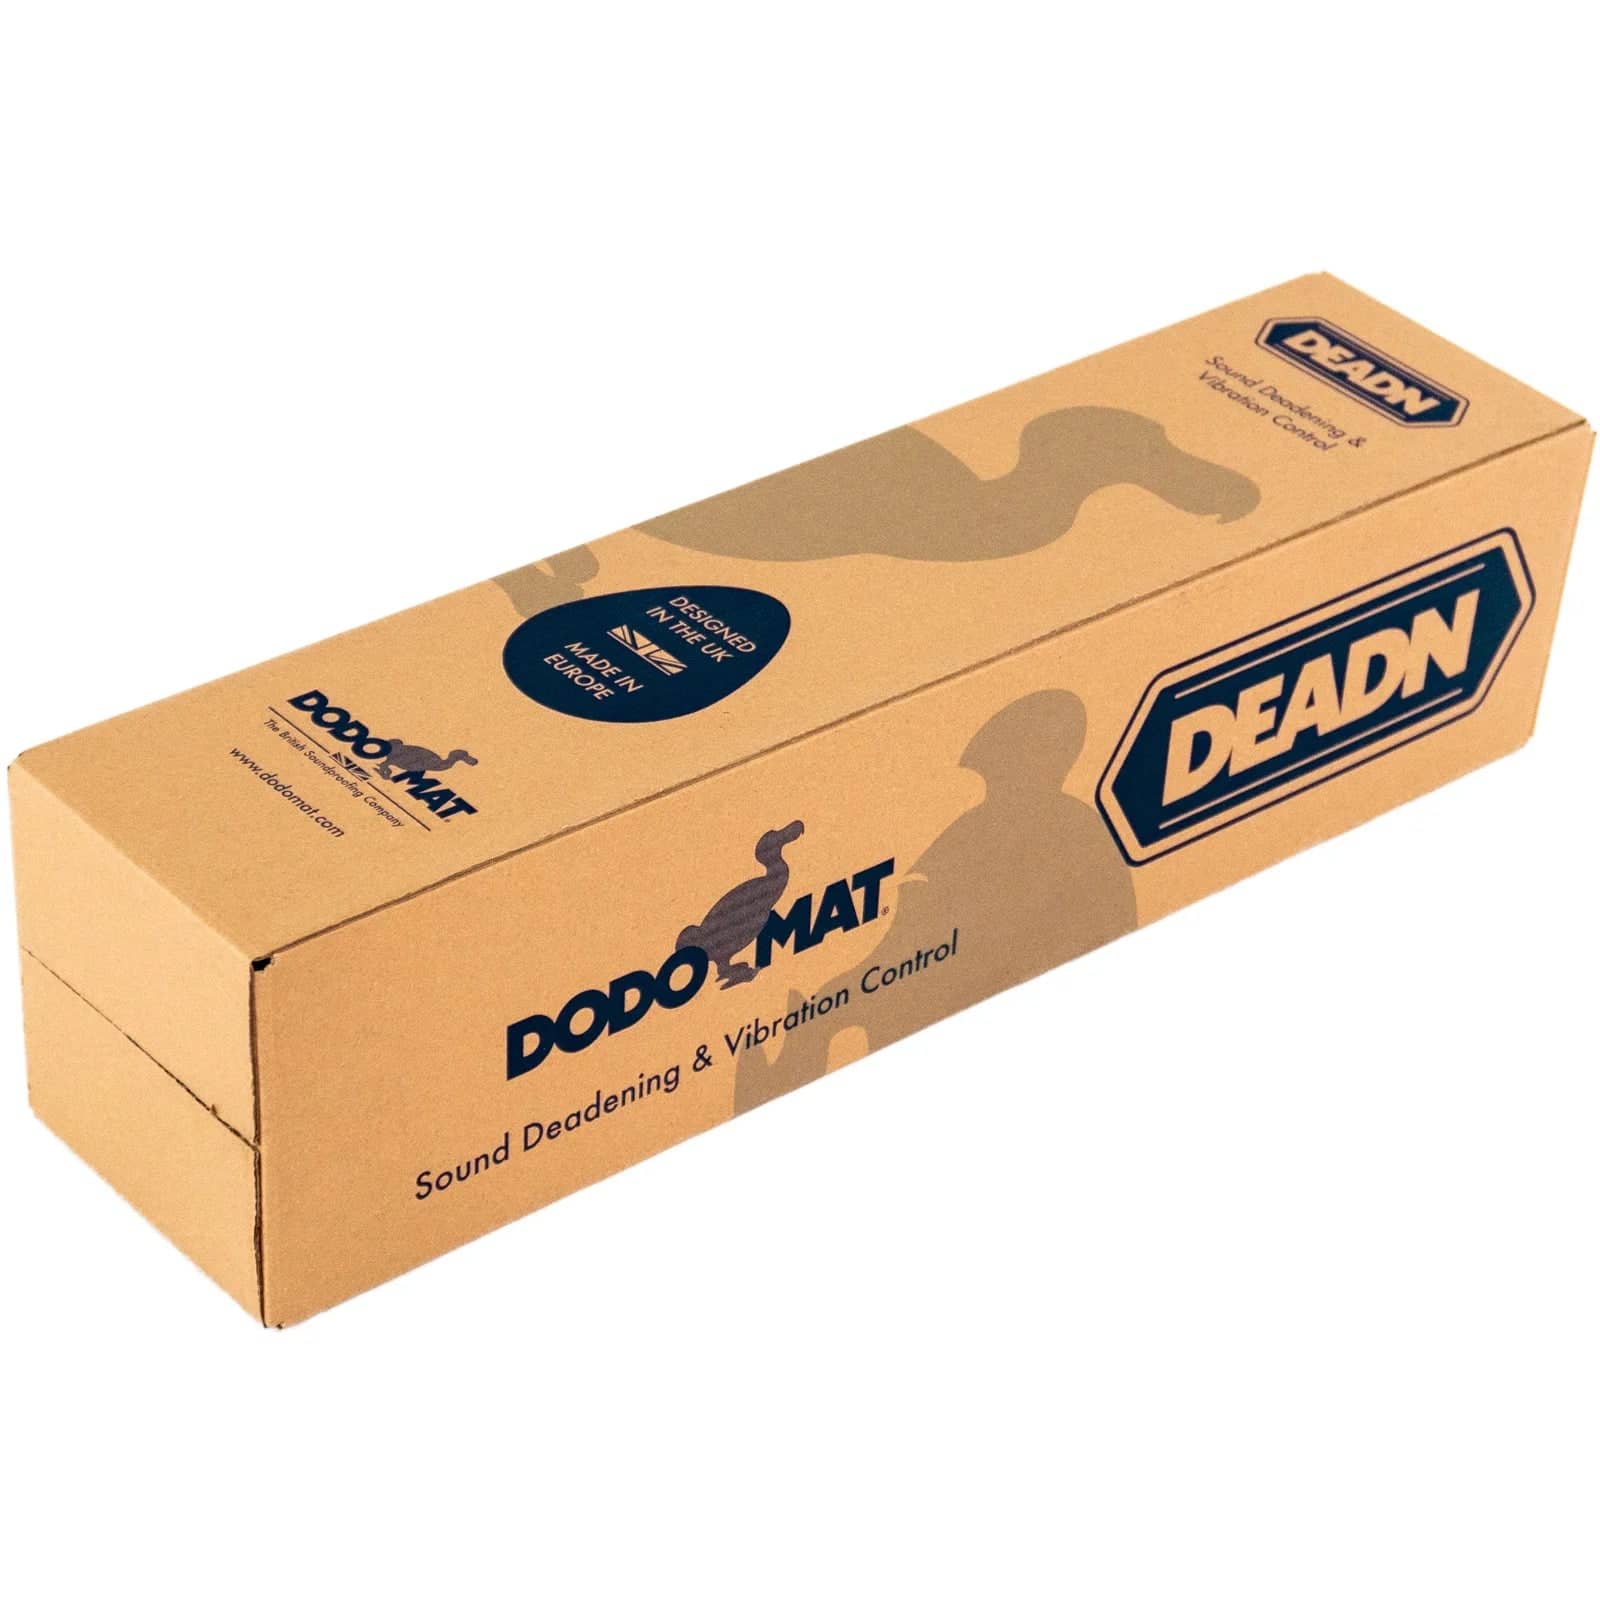 Dodomat DEADN Hex Roll (SE) Special Edition 1.8mm Sound Deadening DOD-DEADMAT-HEX